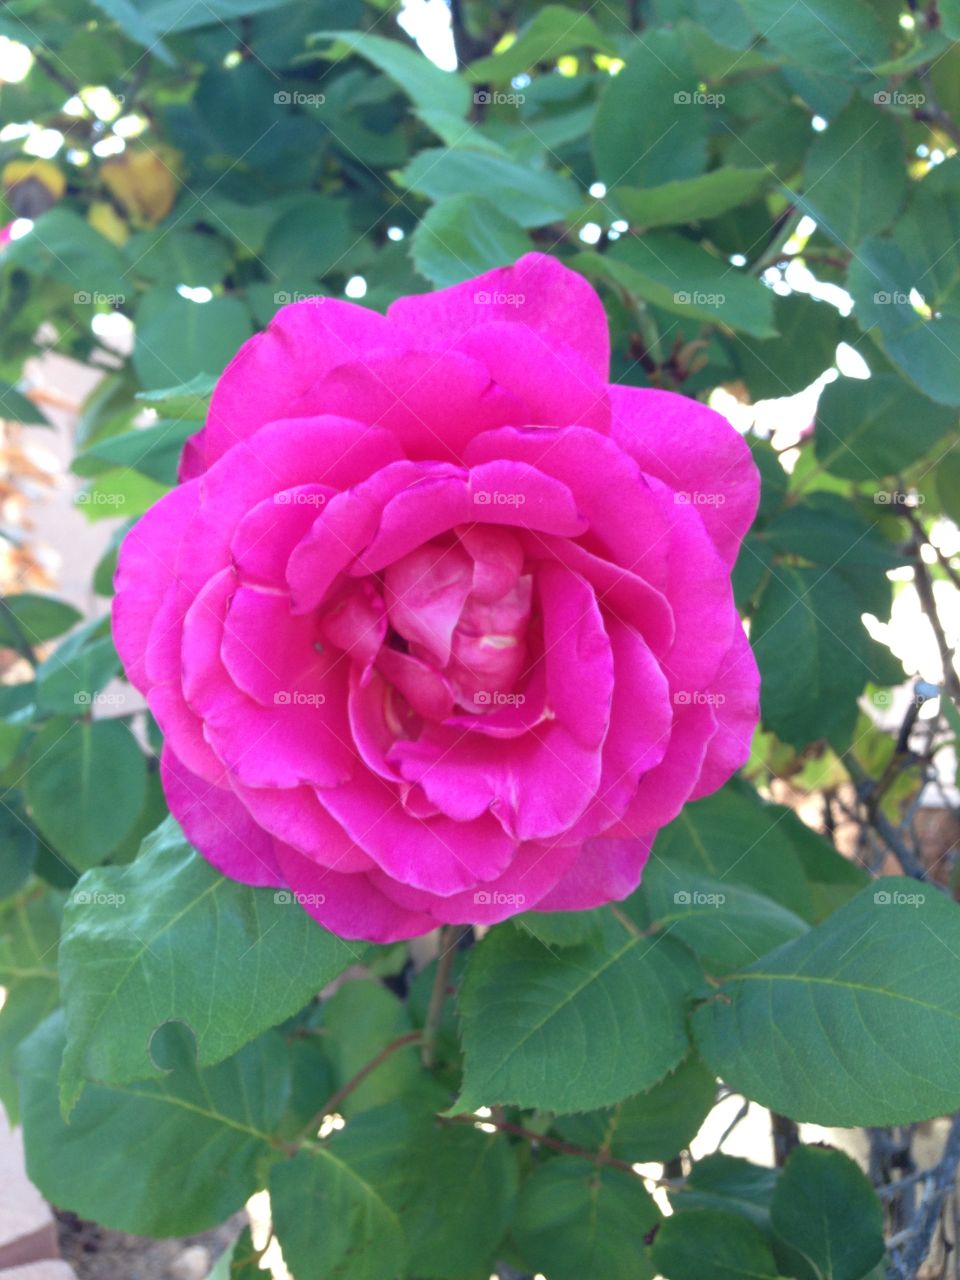 Pink flower. Backyard flower in bloom